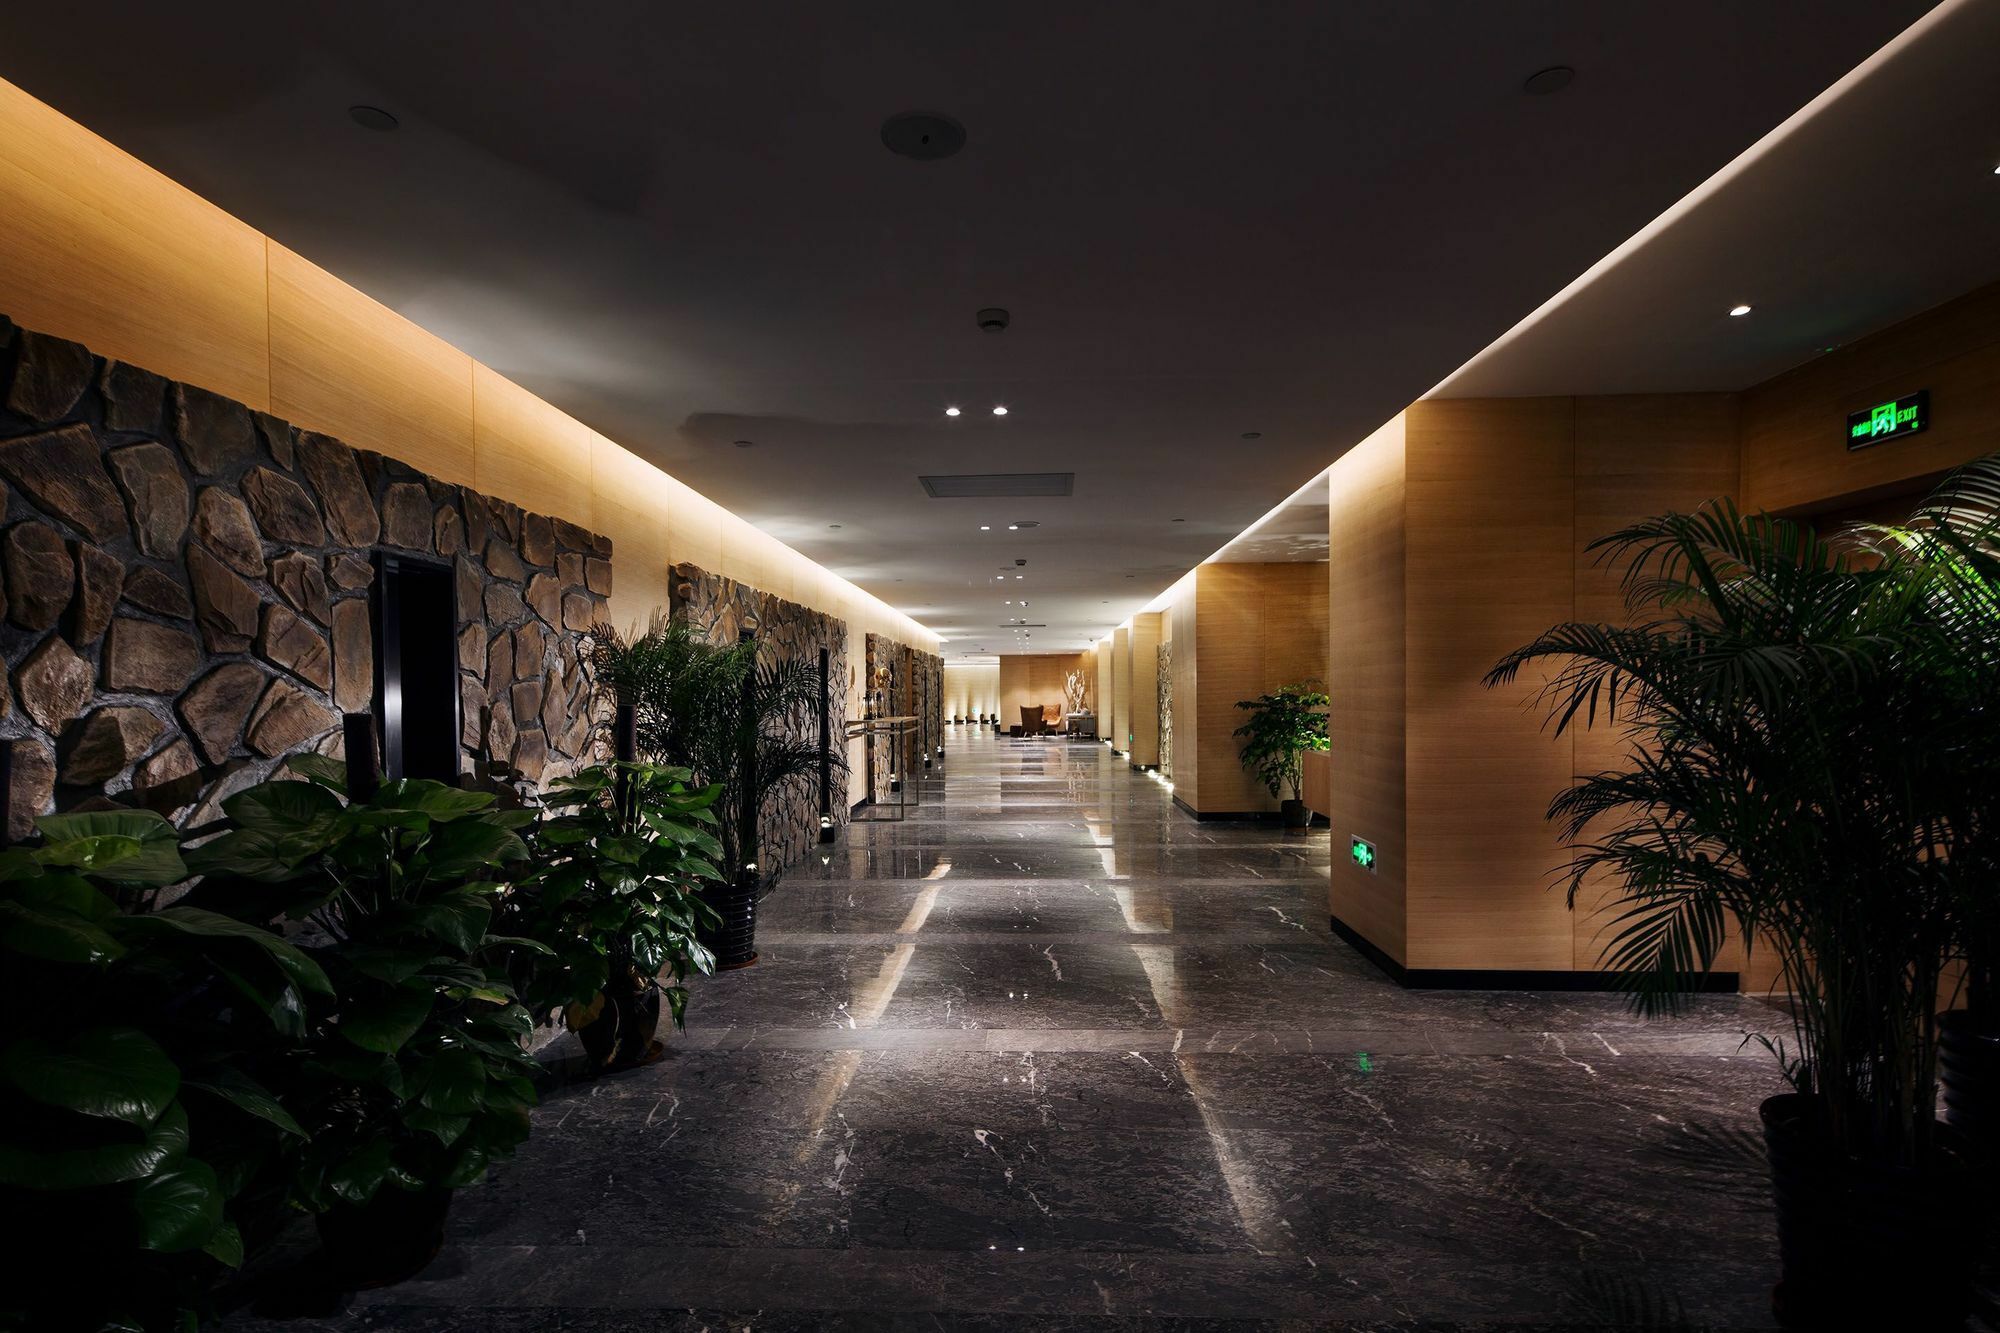 Swisstouches Guangzhou Hotel Residences Zewnętrze zdjęcie